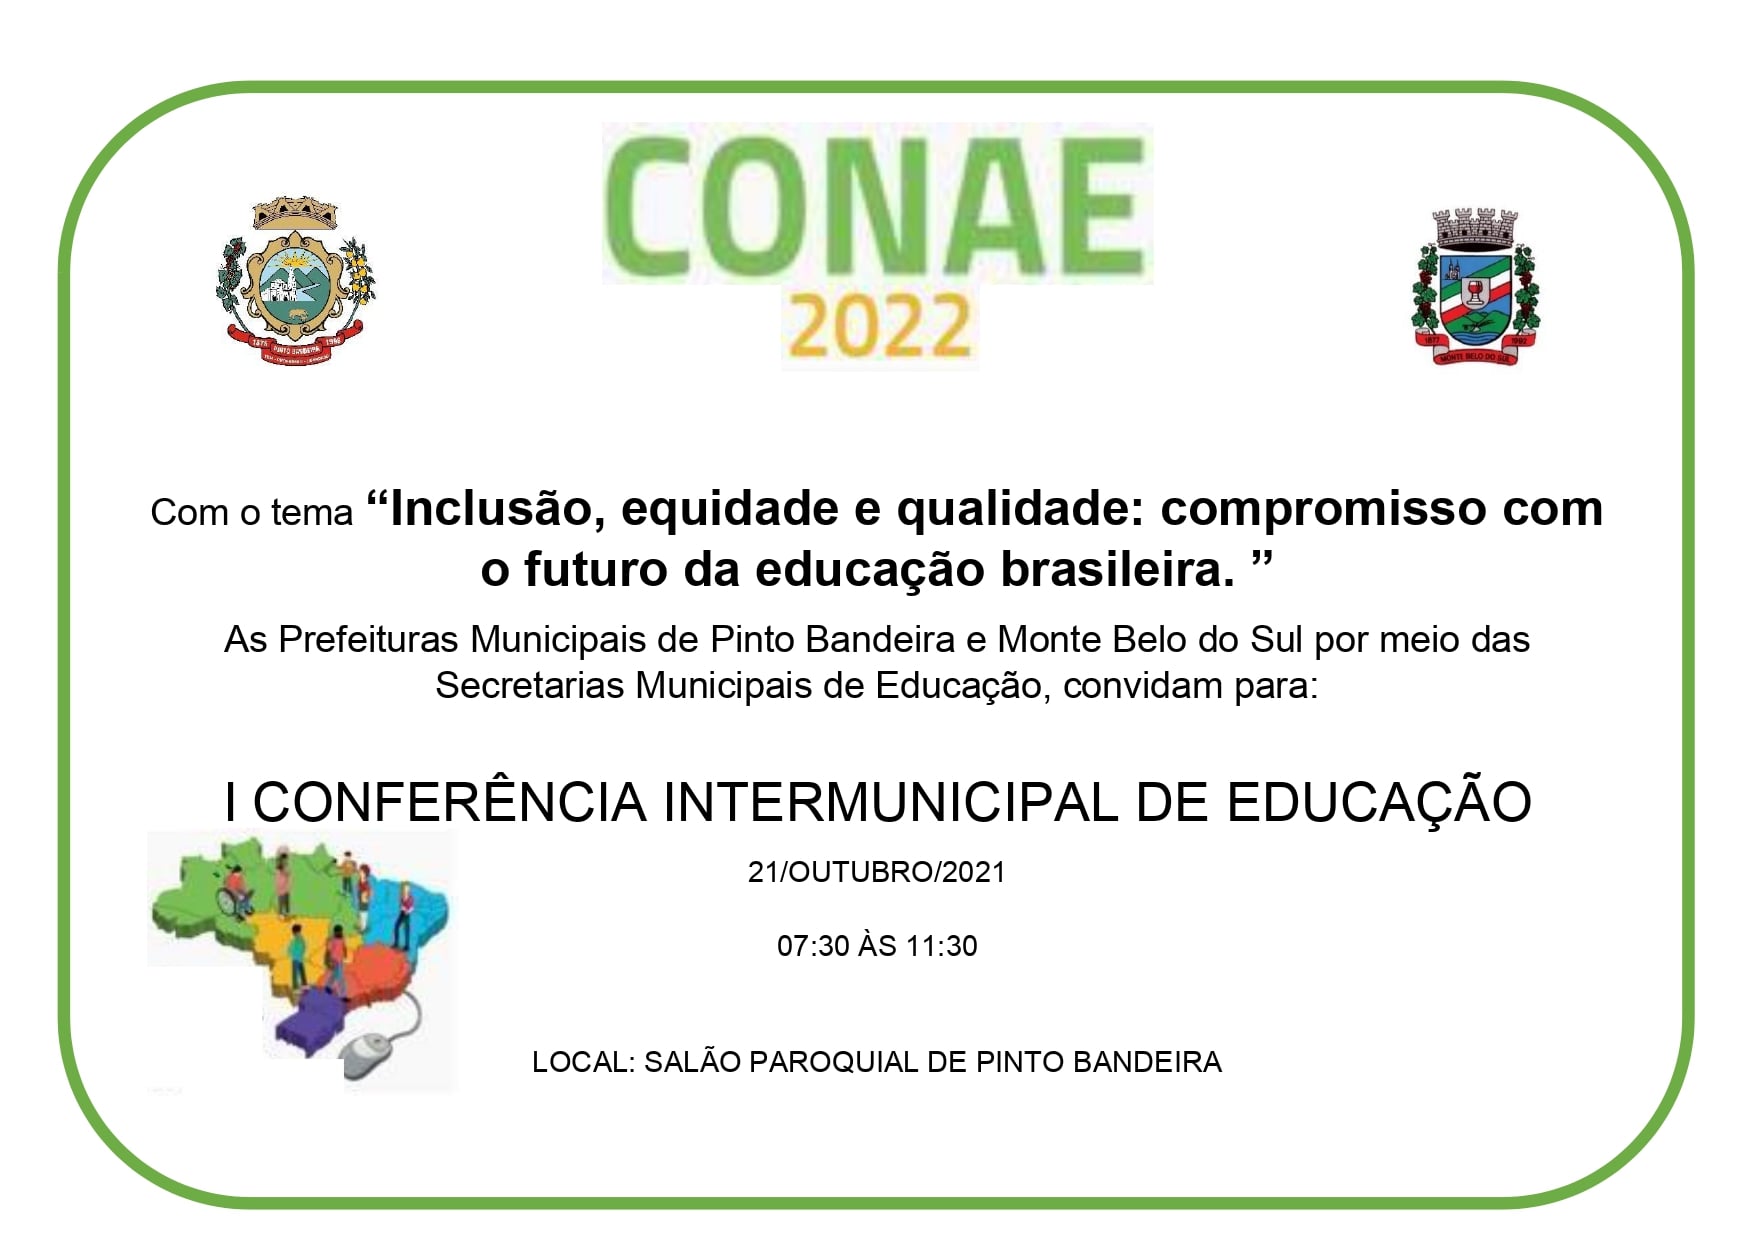 I Conferência Intermunicipal de Educação ocorre na quinta em Pinto Bandeira